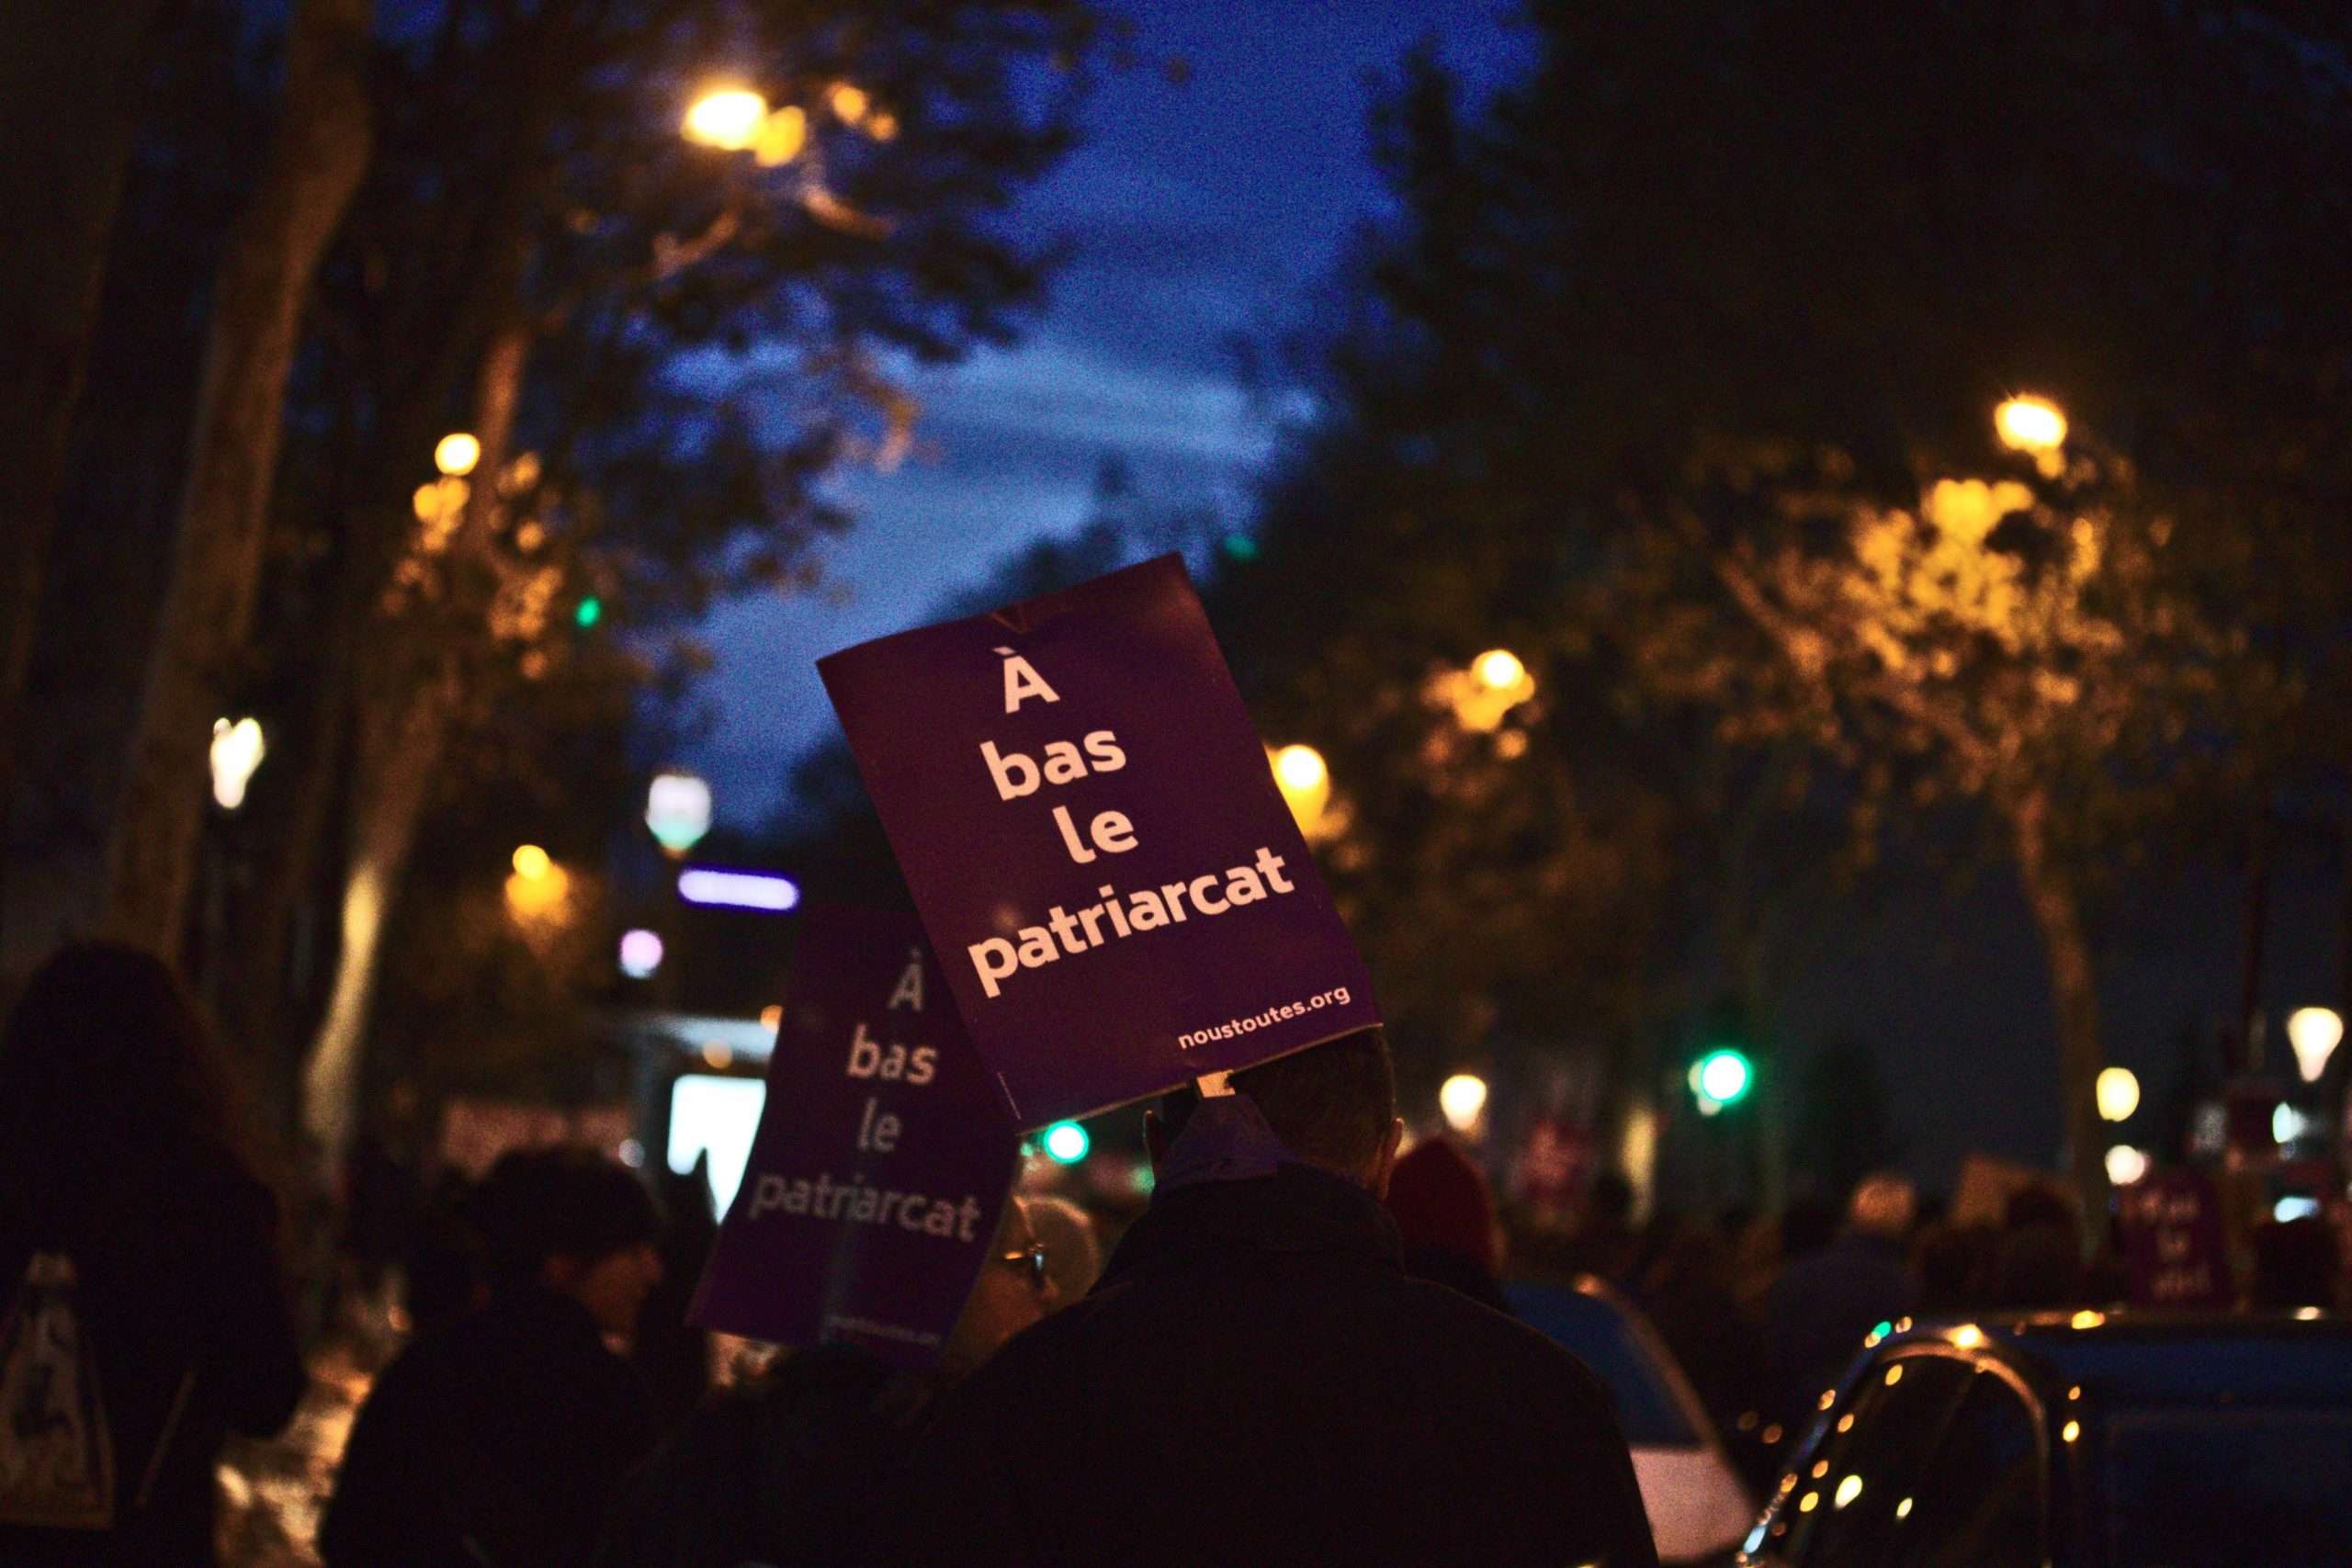 À la marche "Nous Toutes" contre les violences faites aux femmes, à Paris, le samedi 23 novembre 2019. Photographie : Pierre-Olivier Chaput pour Radio Parleur.